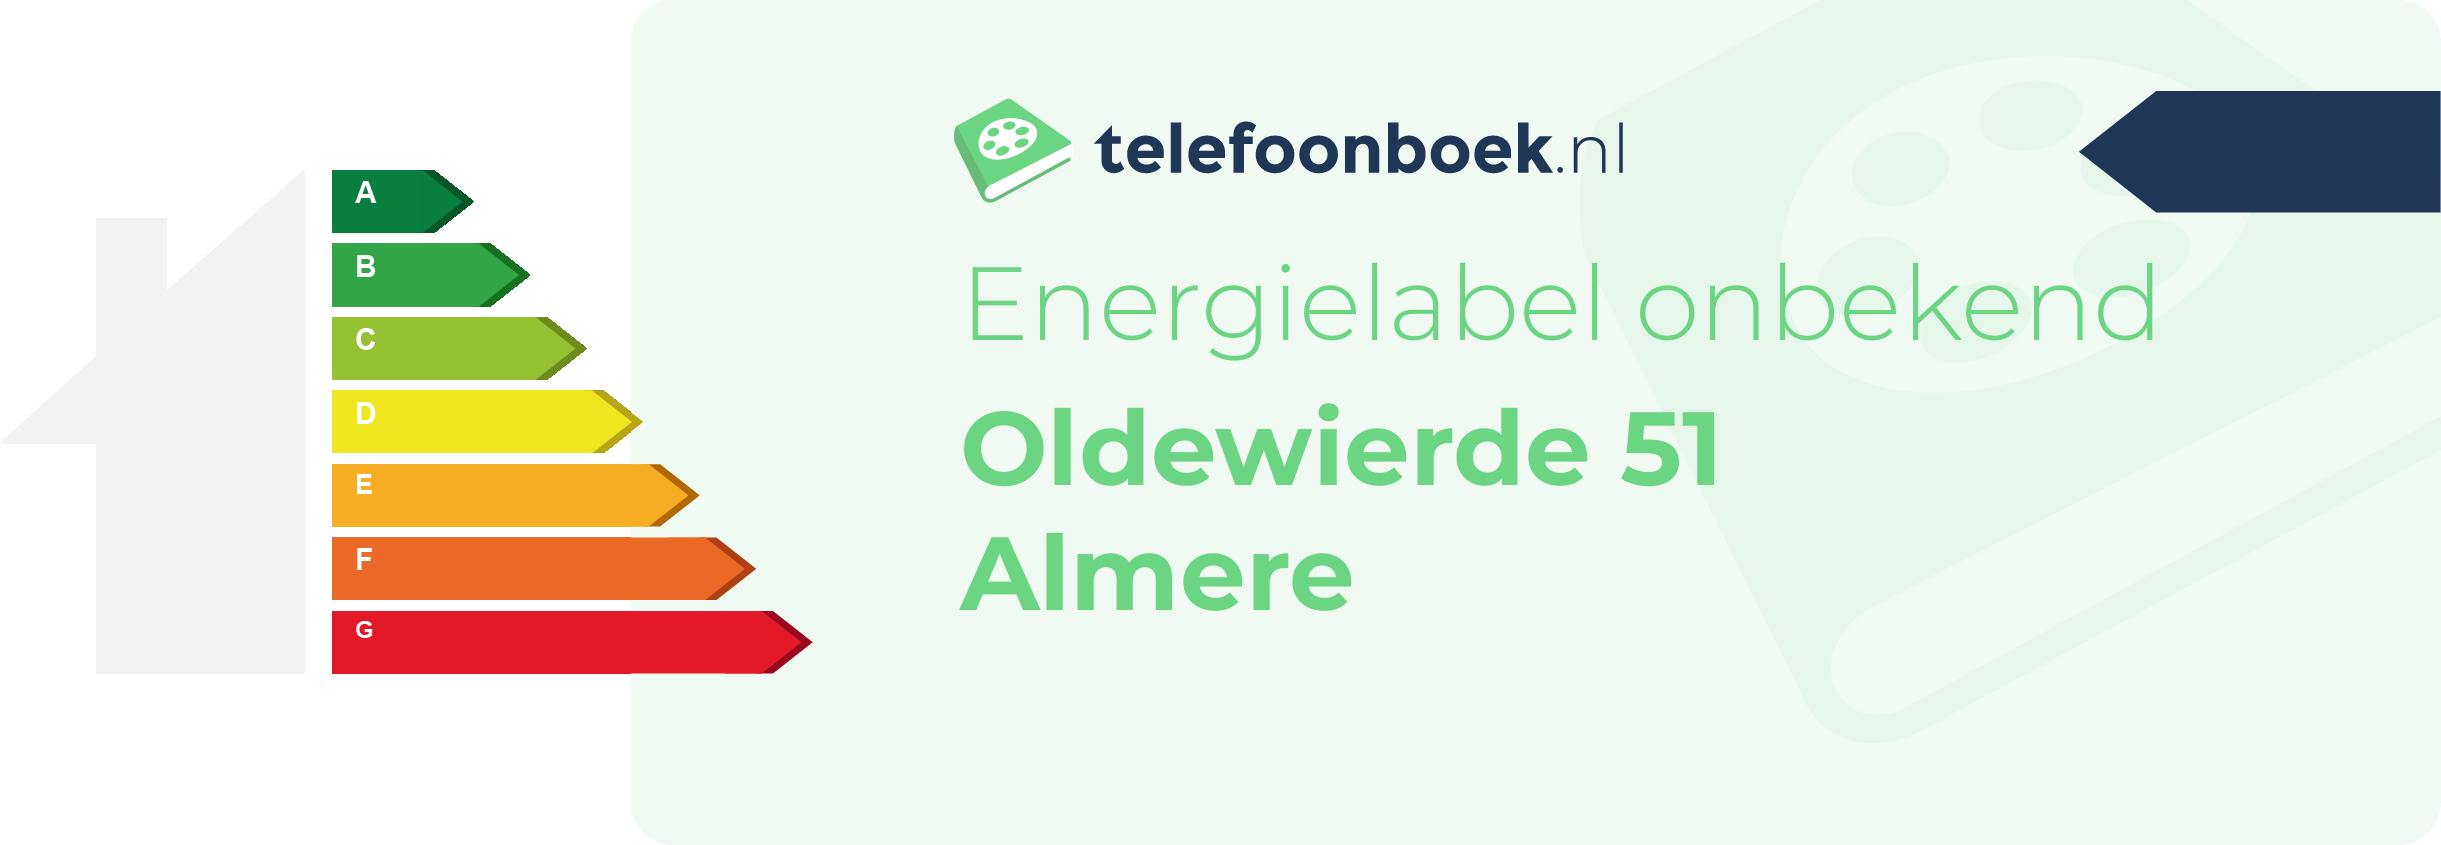 Energielabel Oldewierde 51 Almere